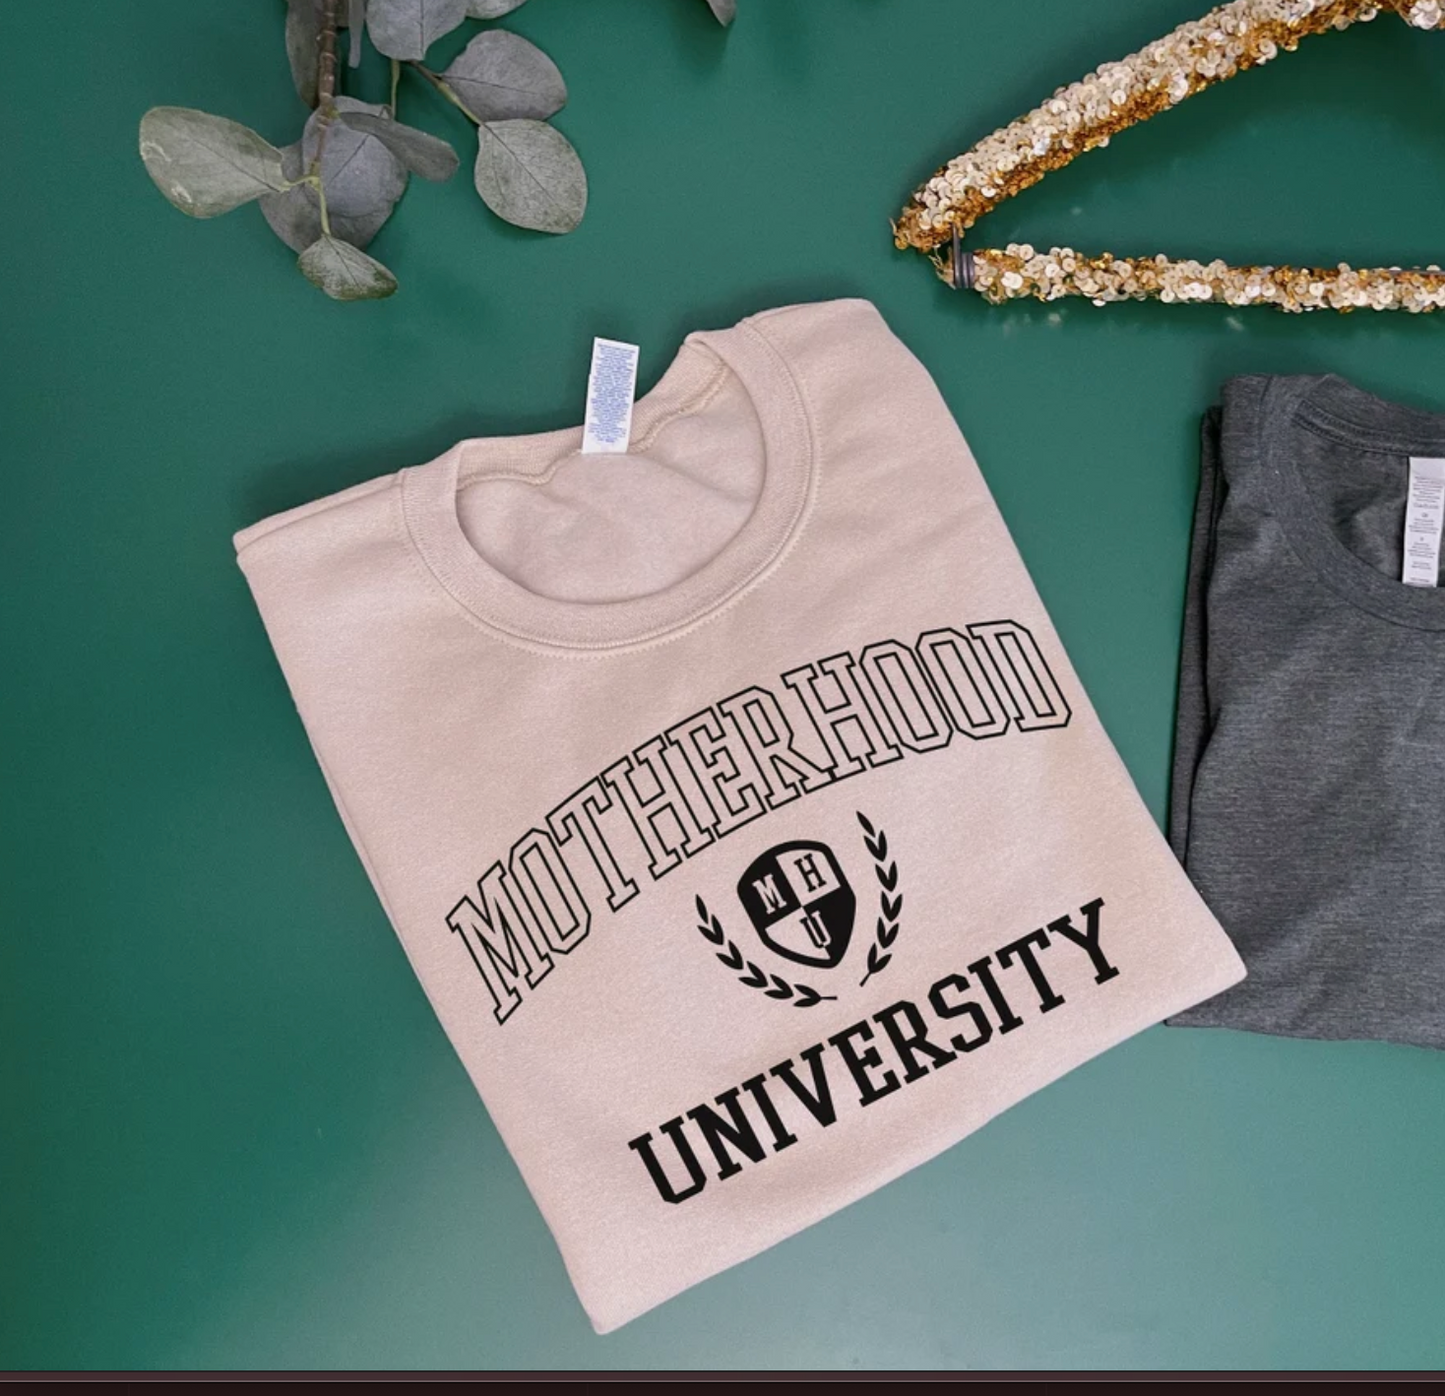 Motherhood University - Tee, Tank, or Sweatshirt Options/ Mothers Day Gift